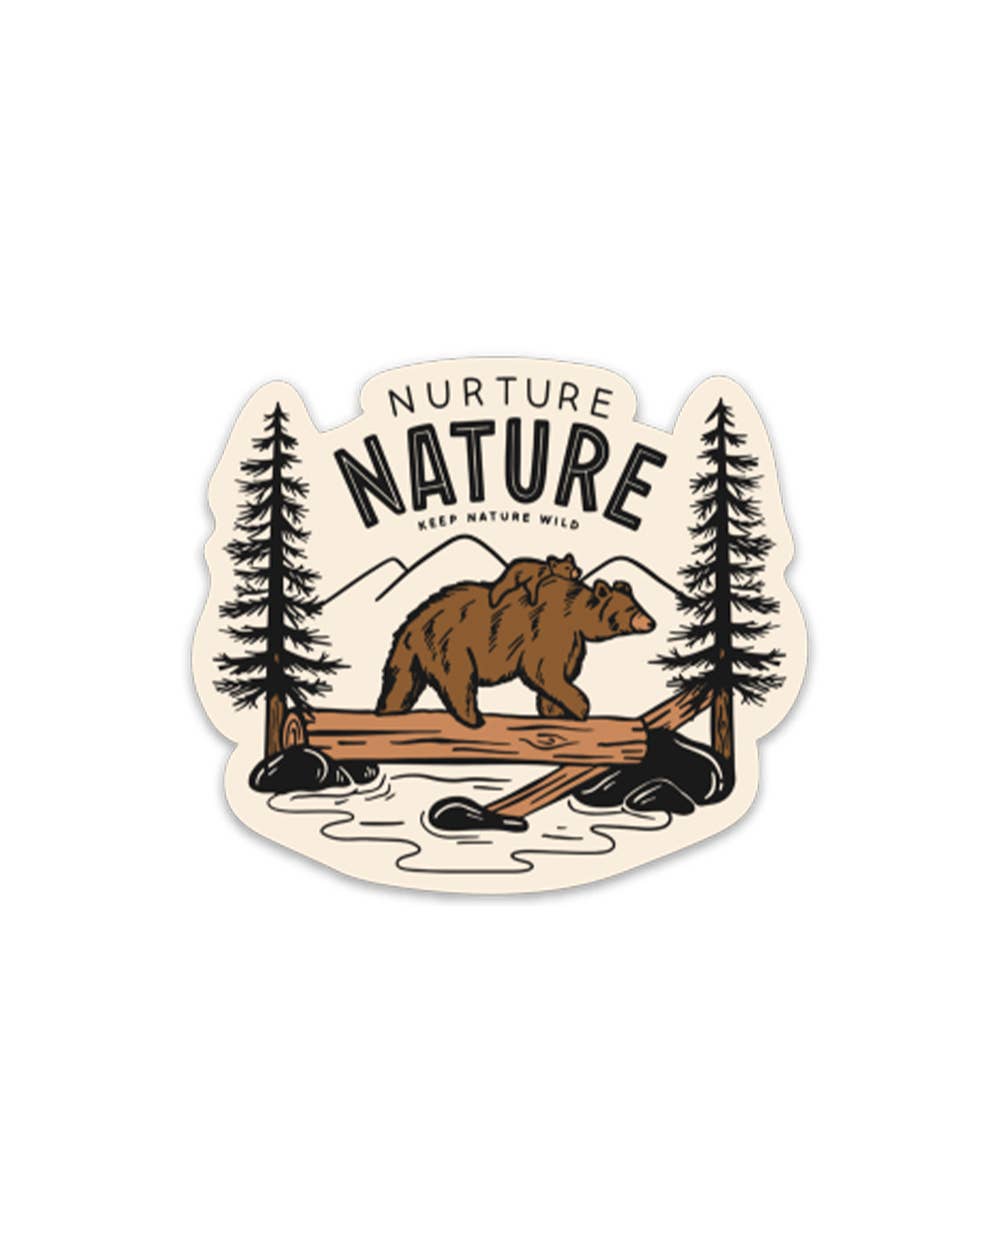 Nurture Nature bear sticker by Keep Nature Wild